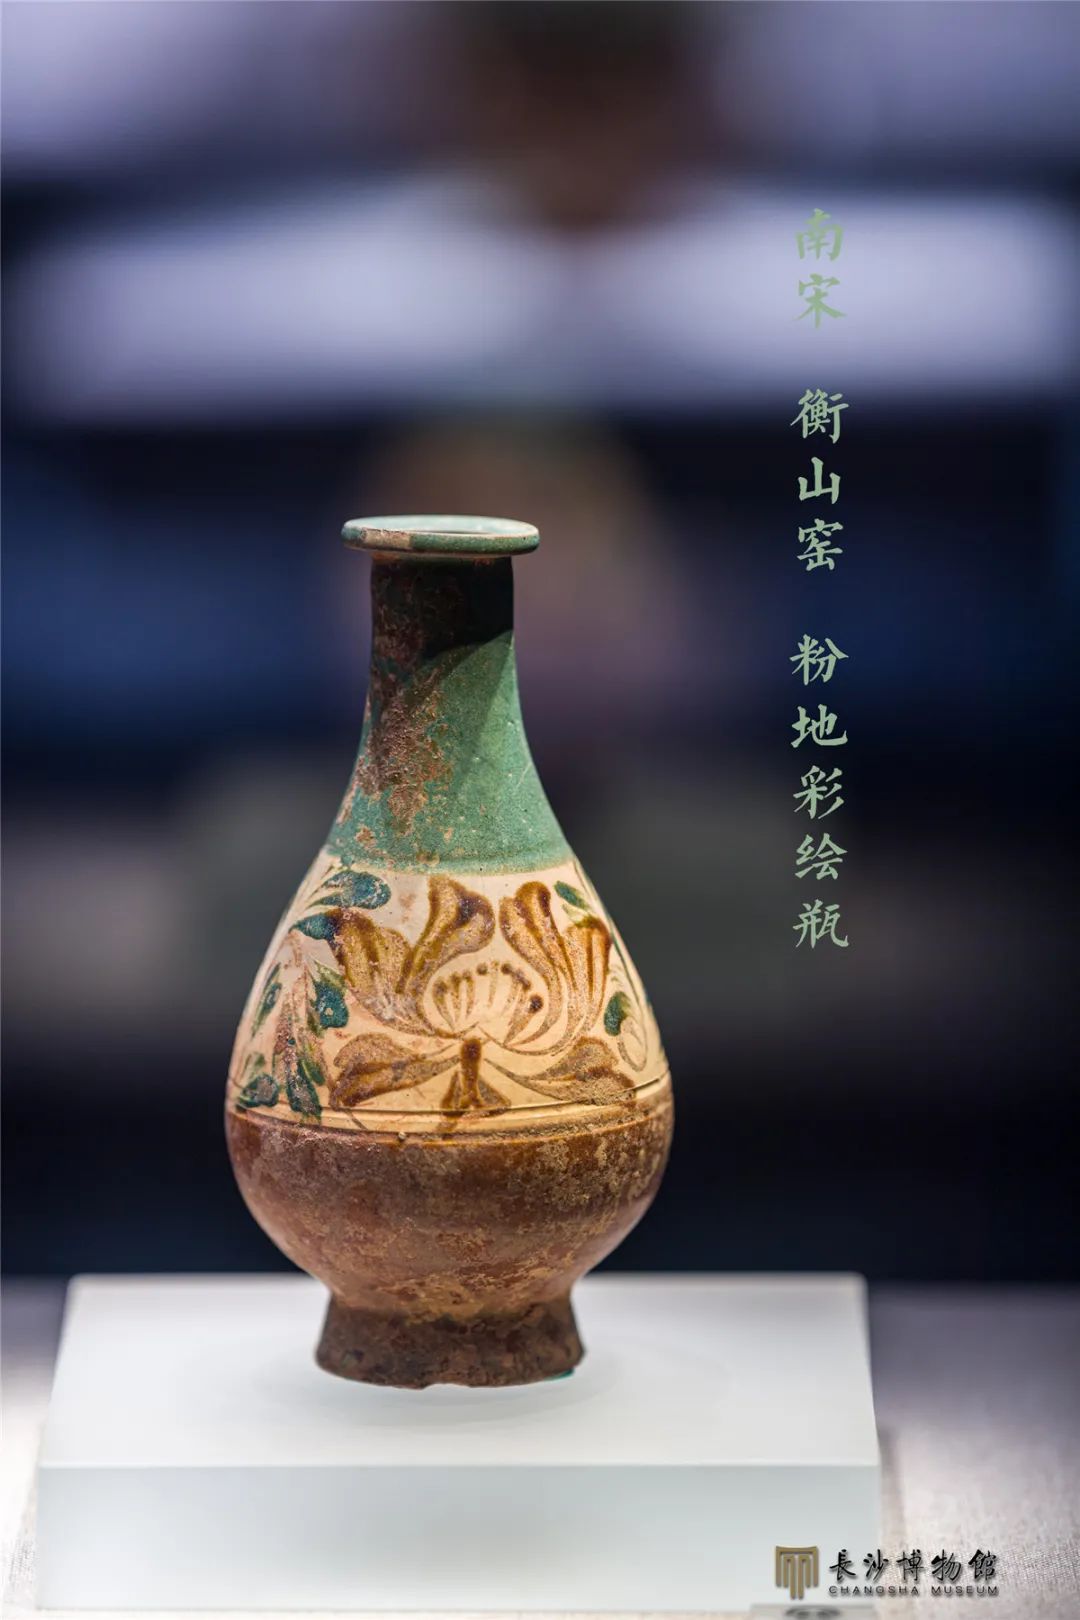 粉地彩绘瓶 南宋（1127—1279年） 衡山窑出土 湖南省文物考古研究所藏